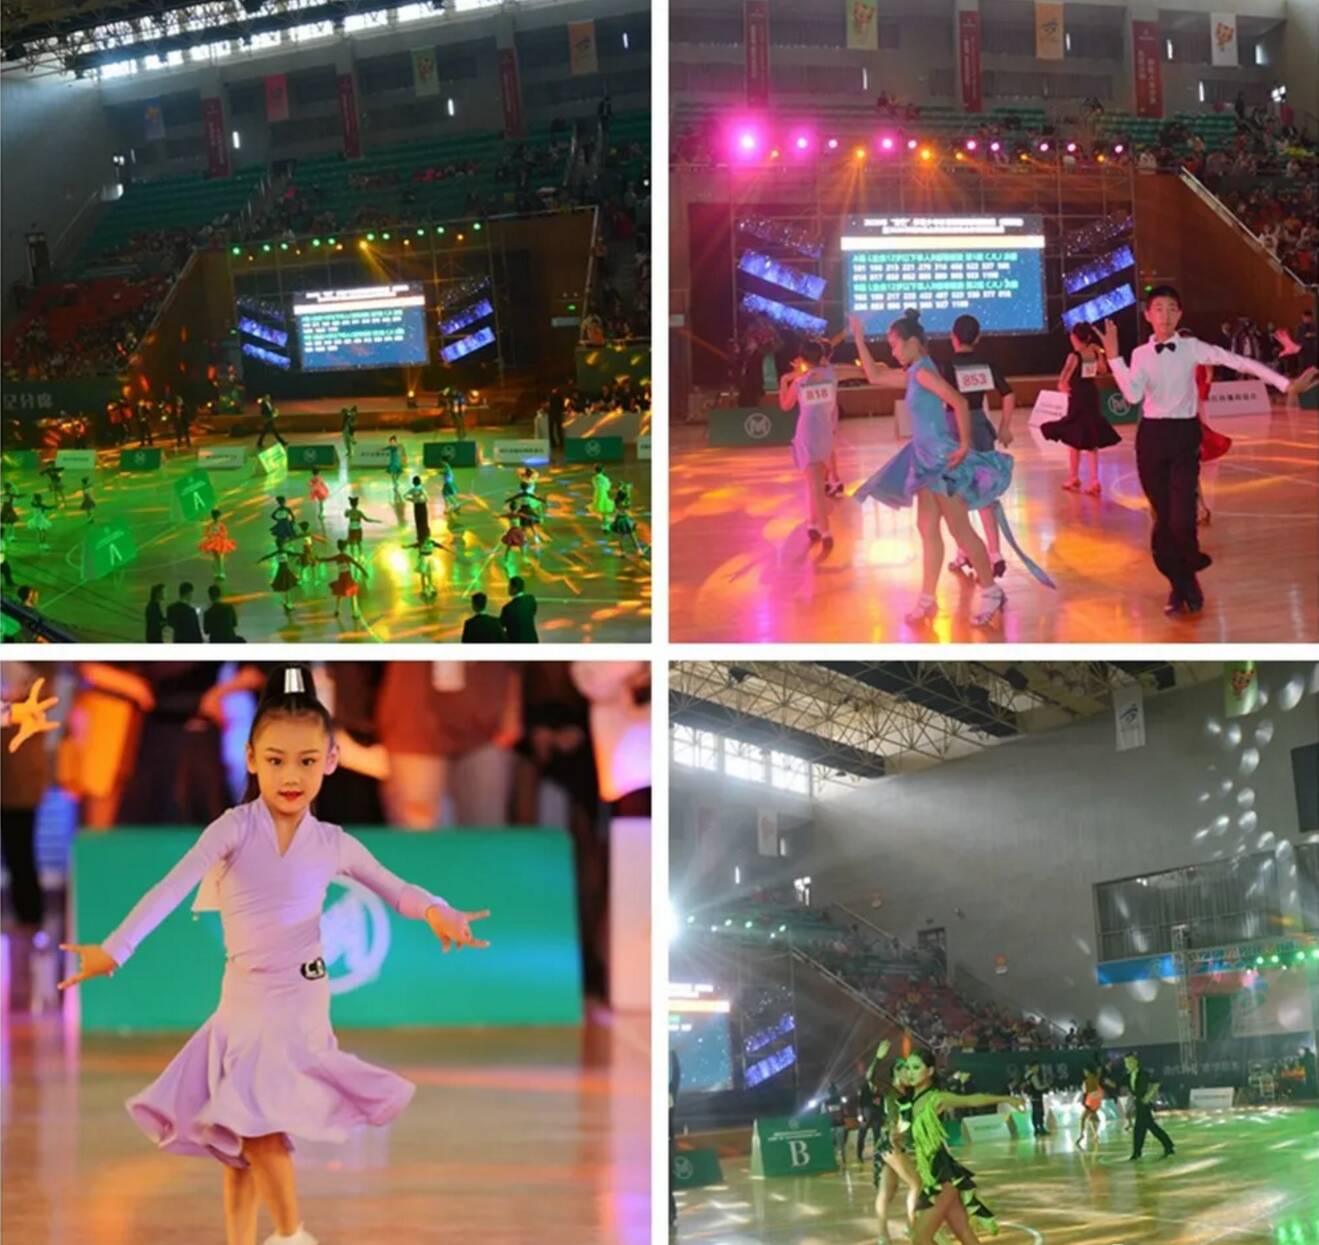 全民健身运动会持续深入 博兴县聚力举办多项赛事